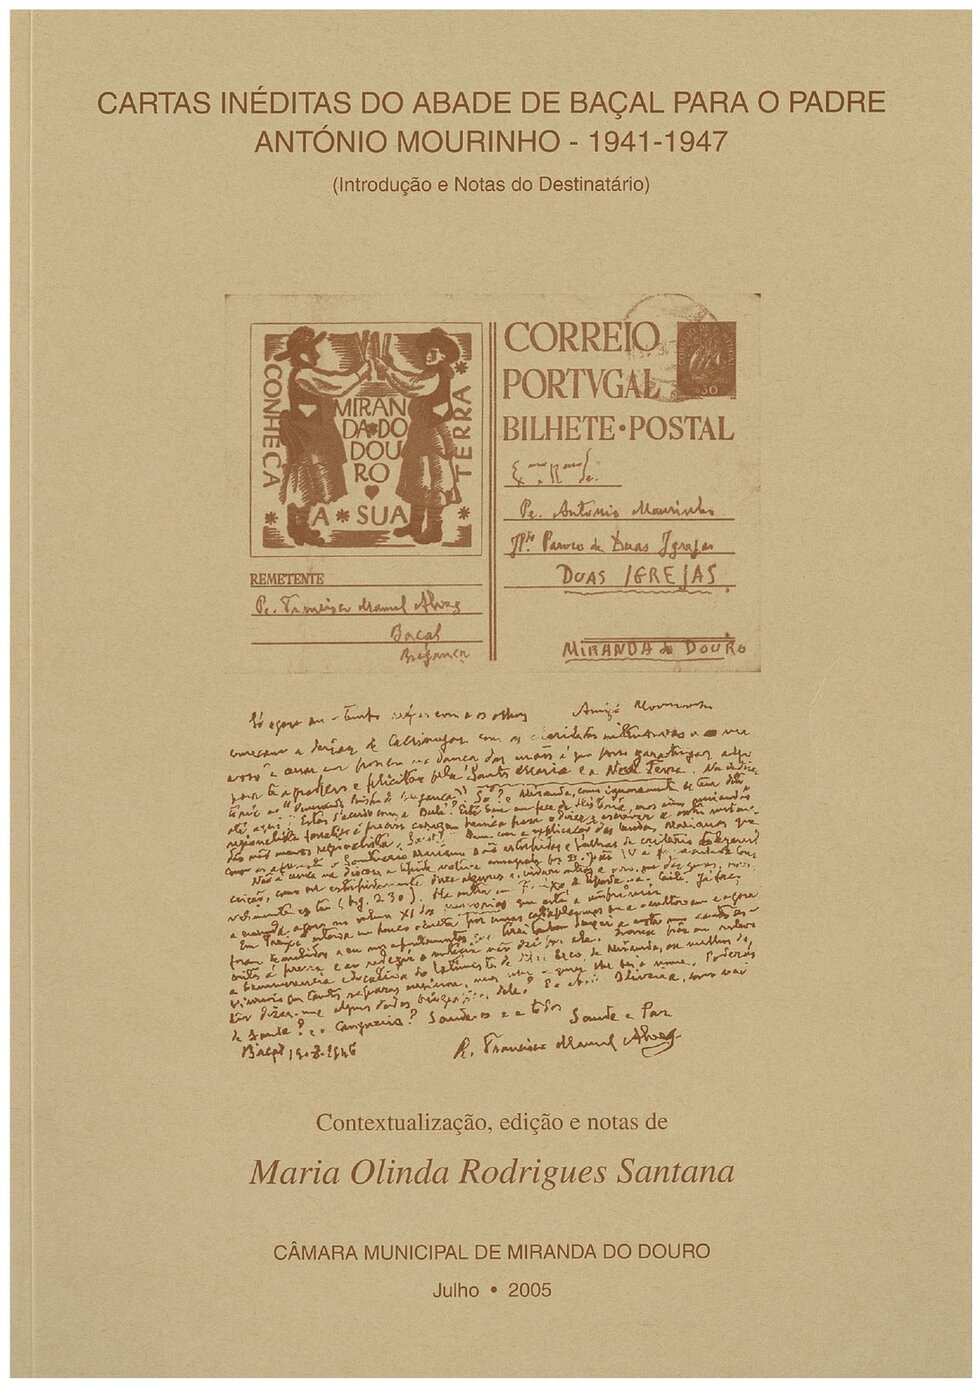 Cartas ineditas do abade de bacal para o padre antonio mourinho   1941 1947 page 0001 1 980 2500